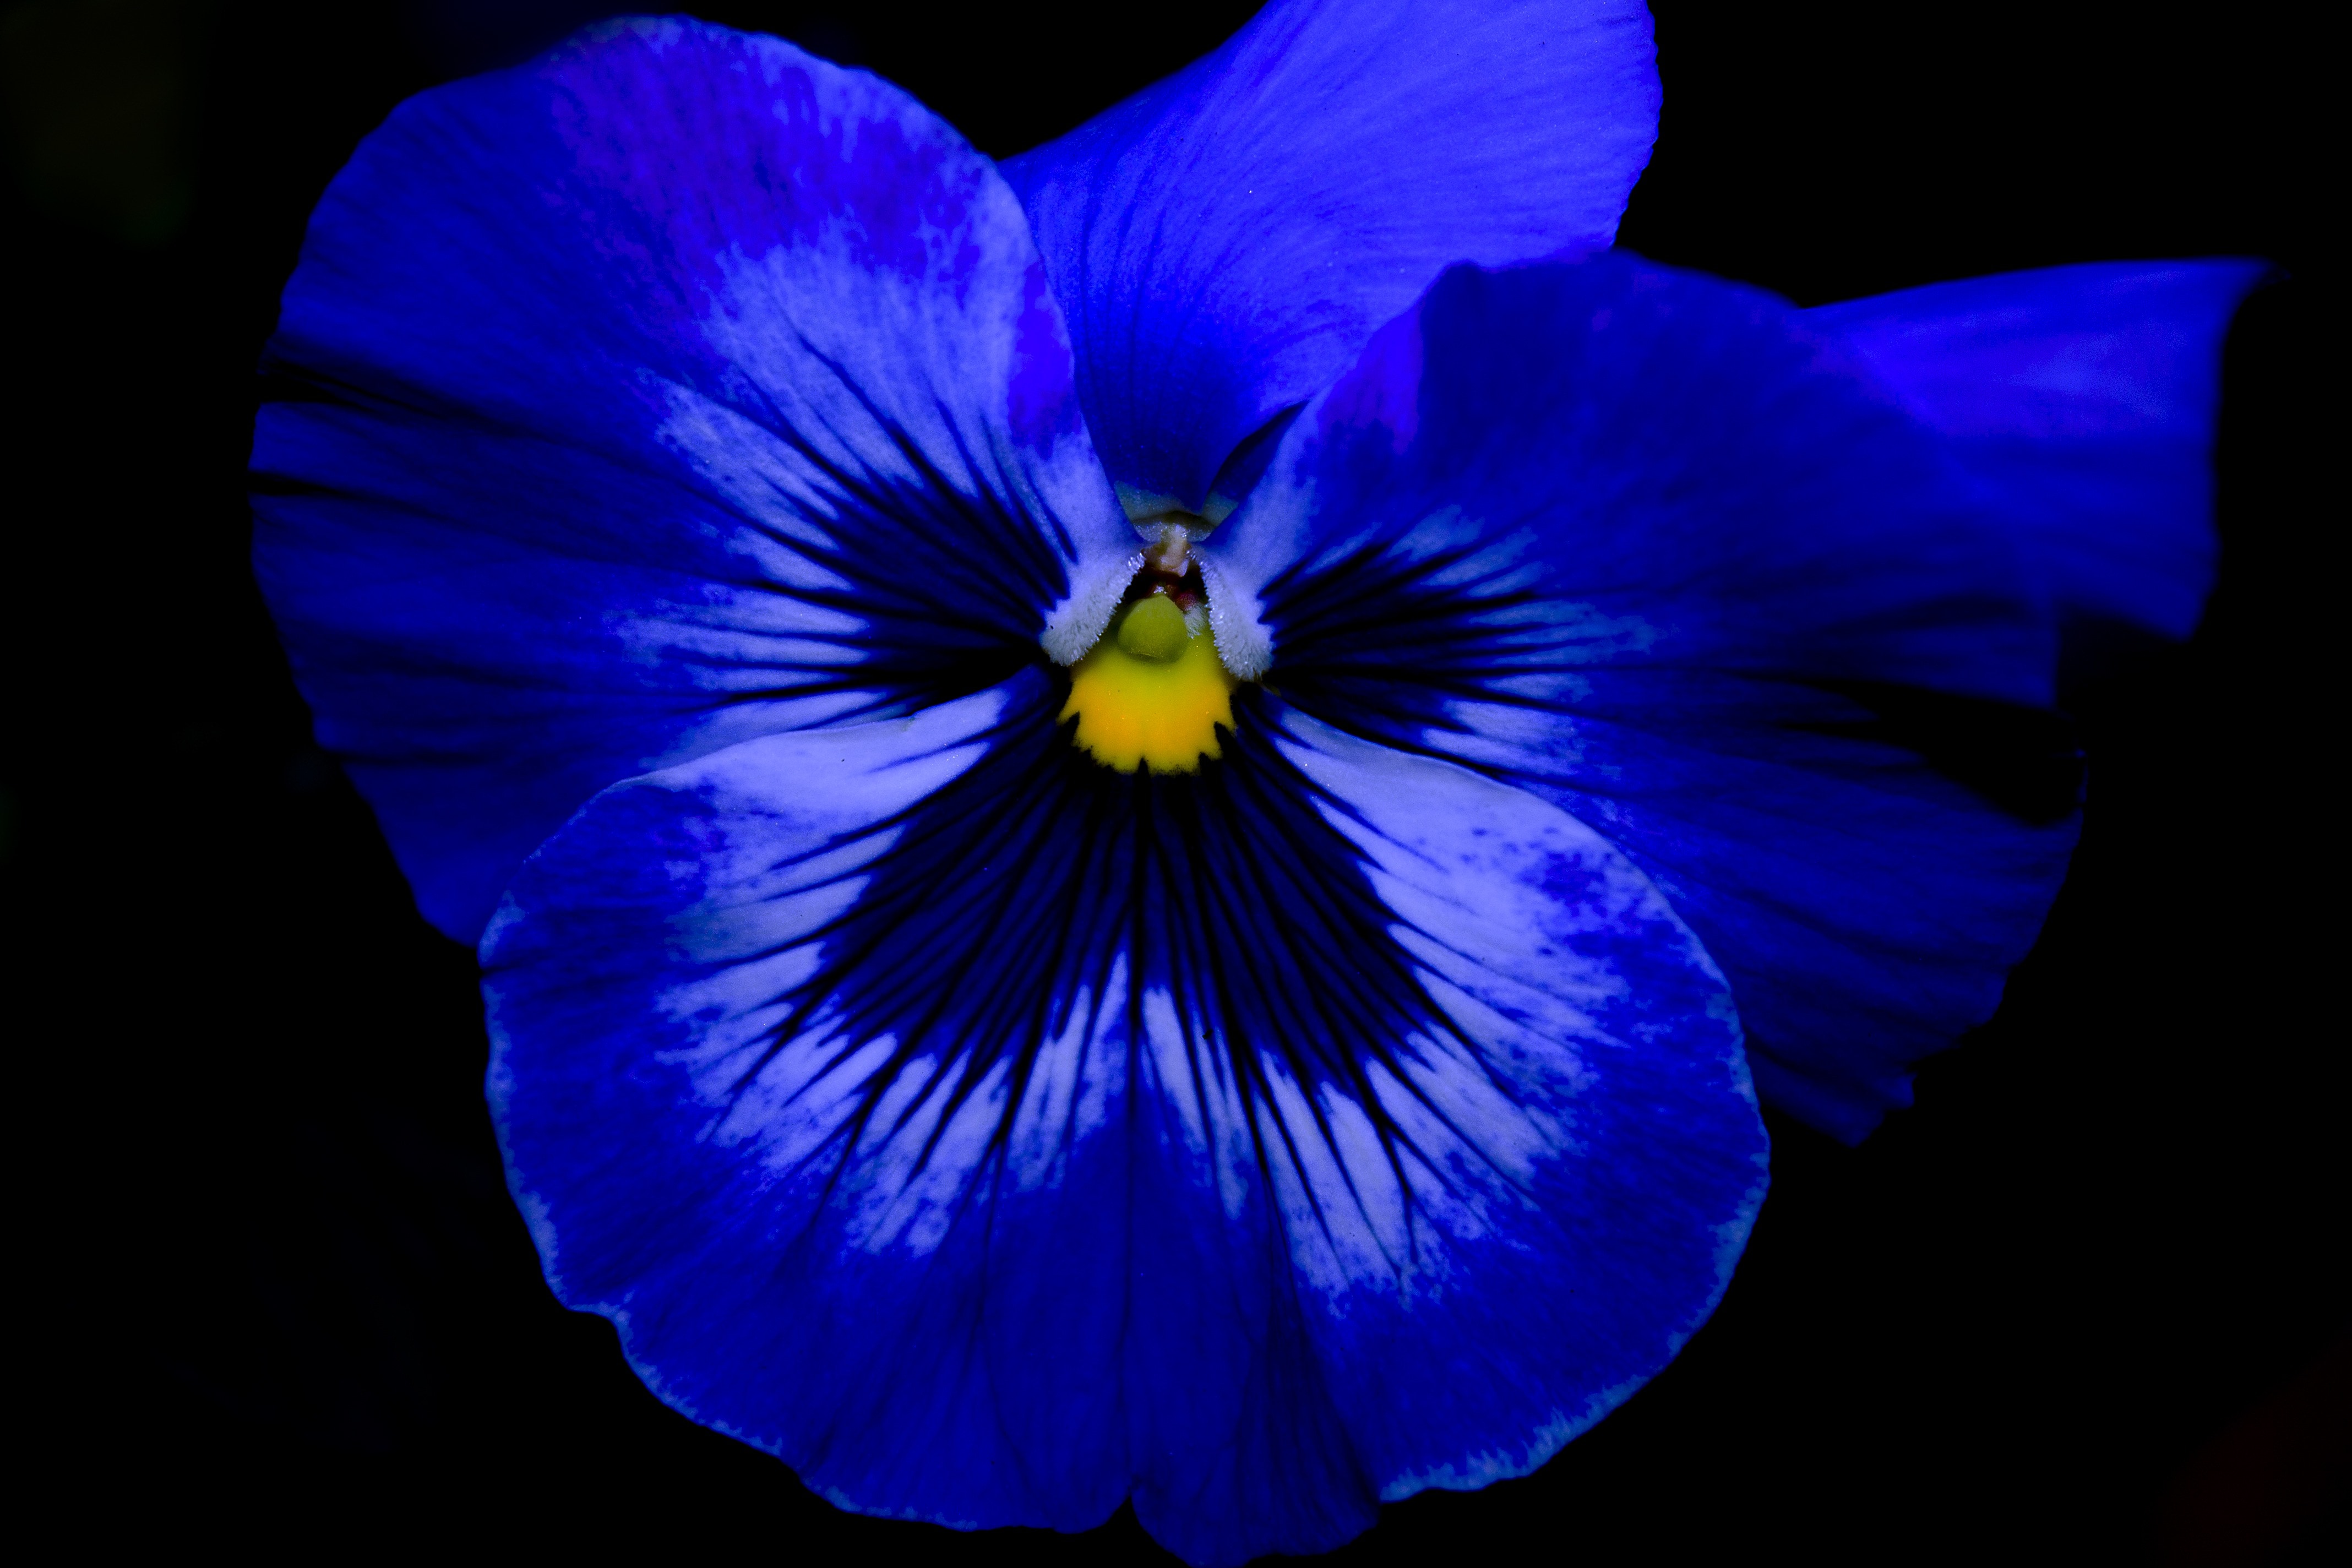 macros shot of blue flower